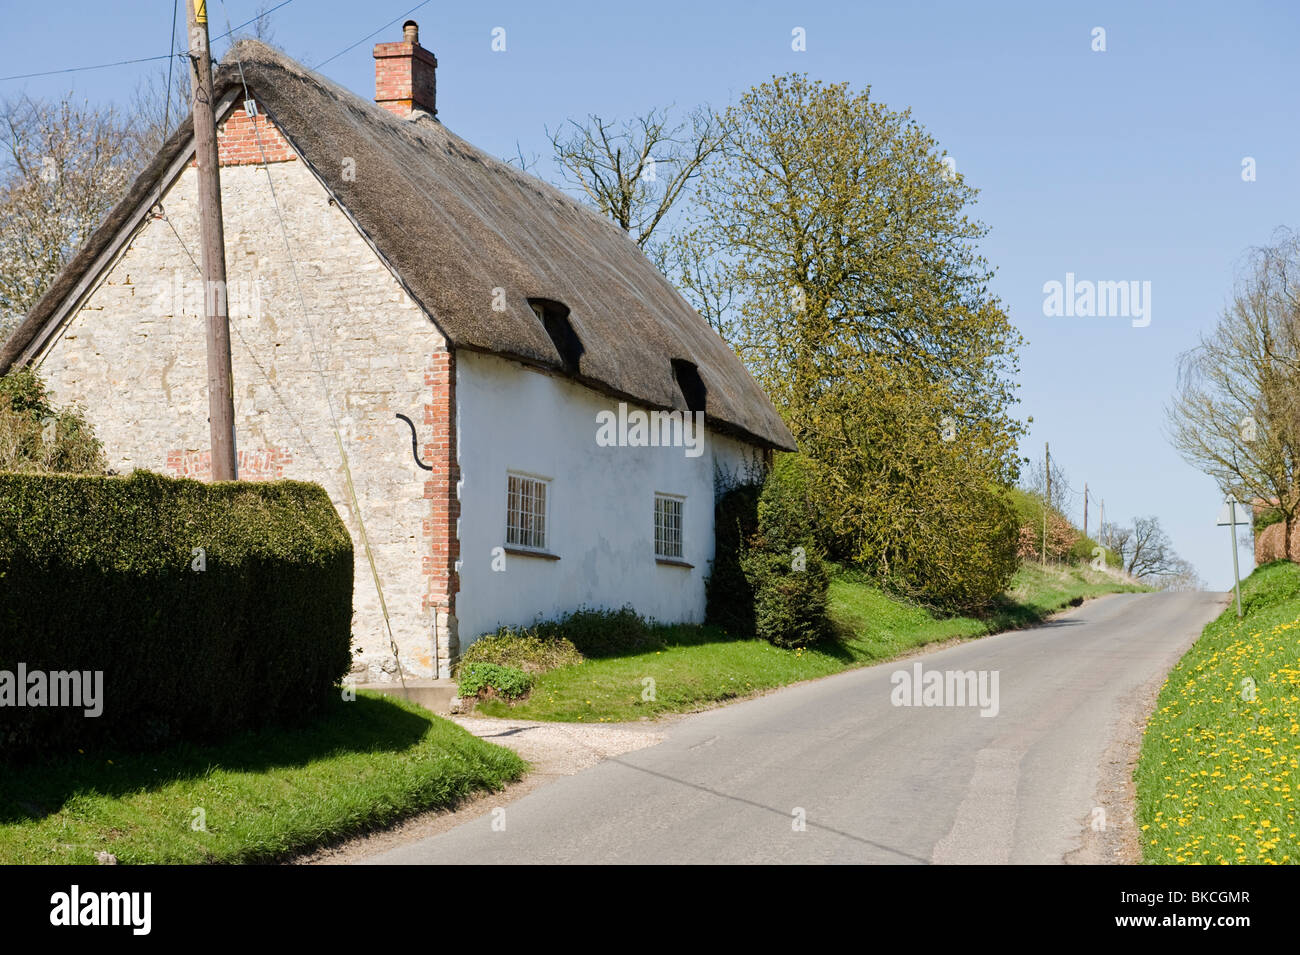 Une chaumière traditionnelle dans un quartier calme route de campagne dans la région de Chilton Oxfordshire. Banque D'Images